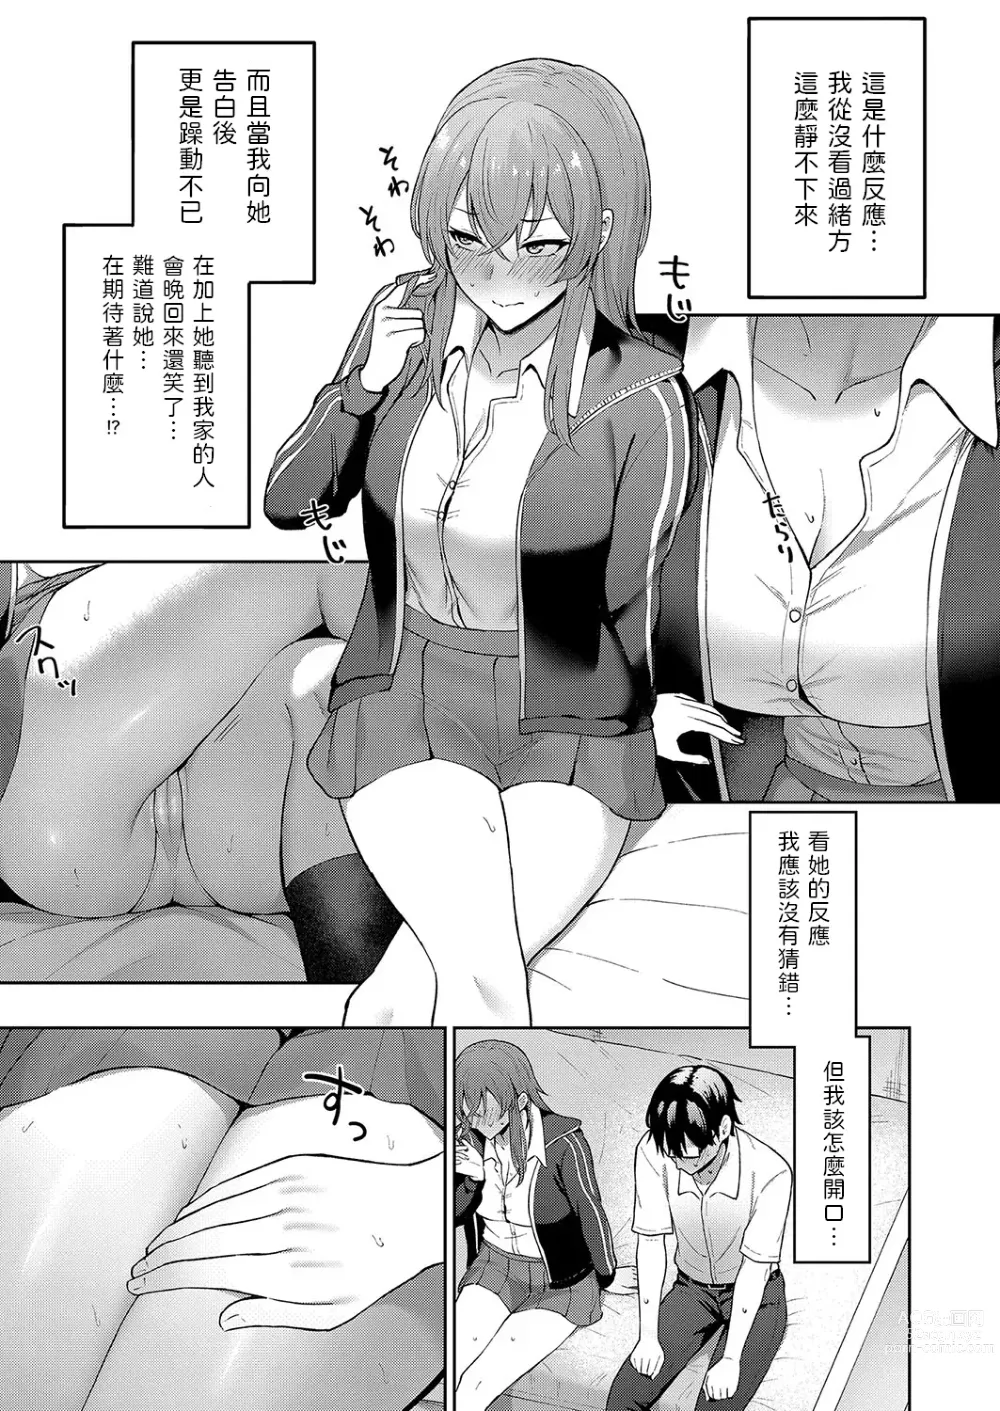 Page 7 of manga Kokuhaku wa Toutotsu ni